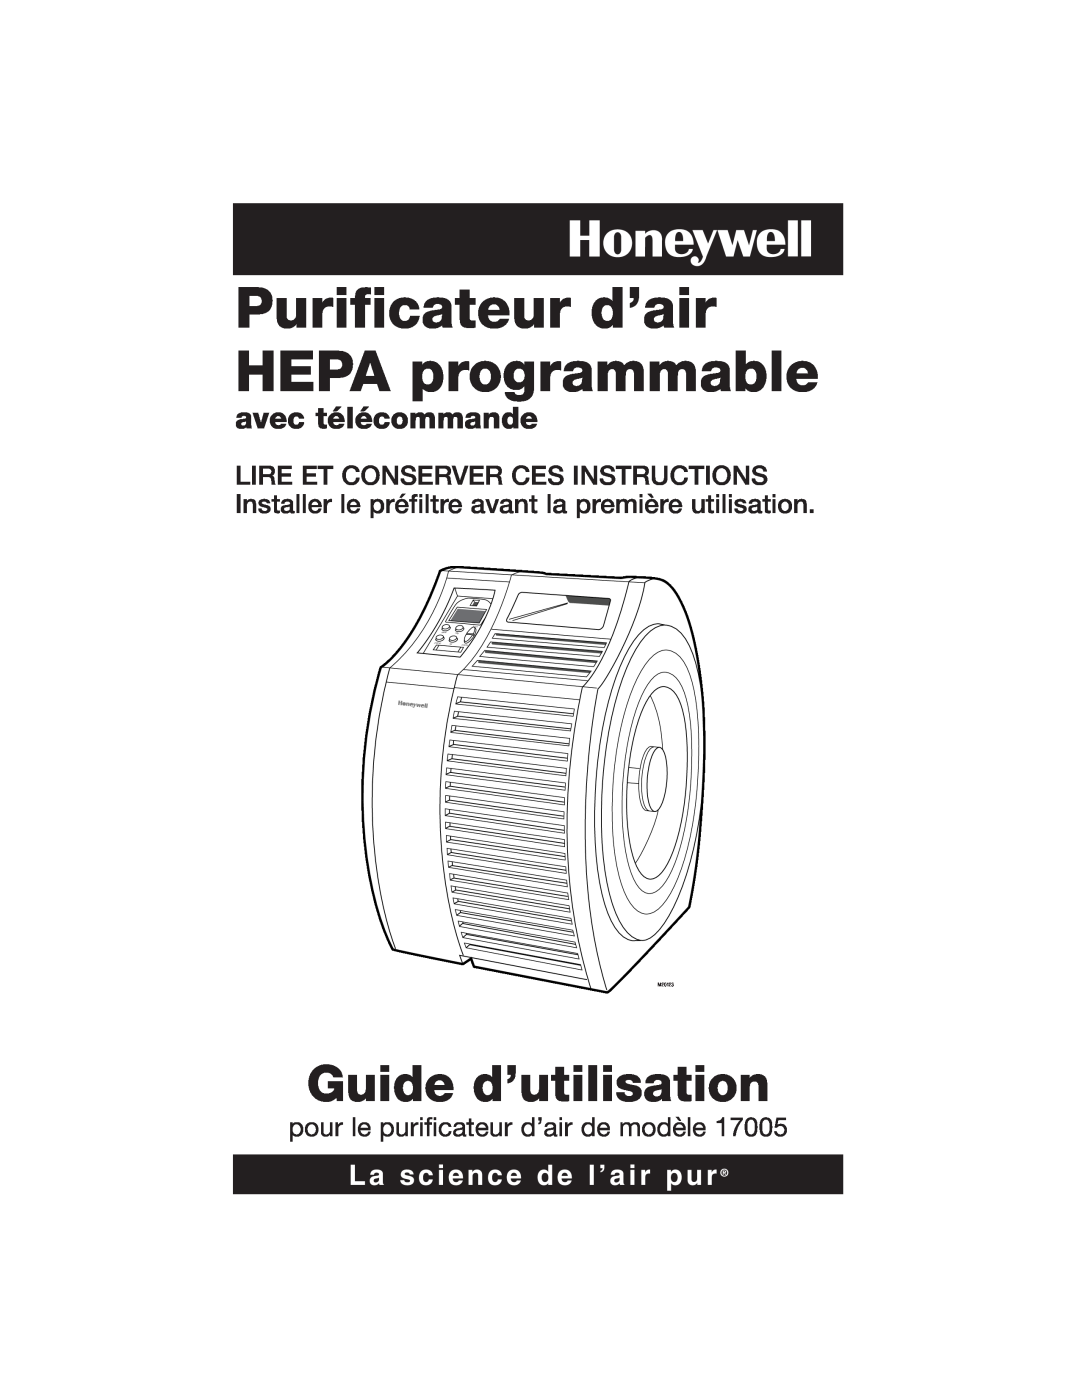 Honeywell 17005 Purificateur d’air HEPA programmable, Guide d’utilisation, avec télécommande, La science de l’air pur 